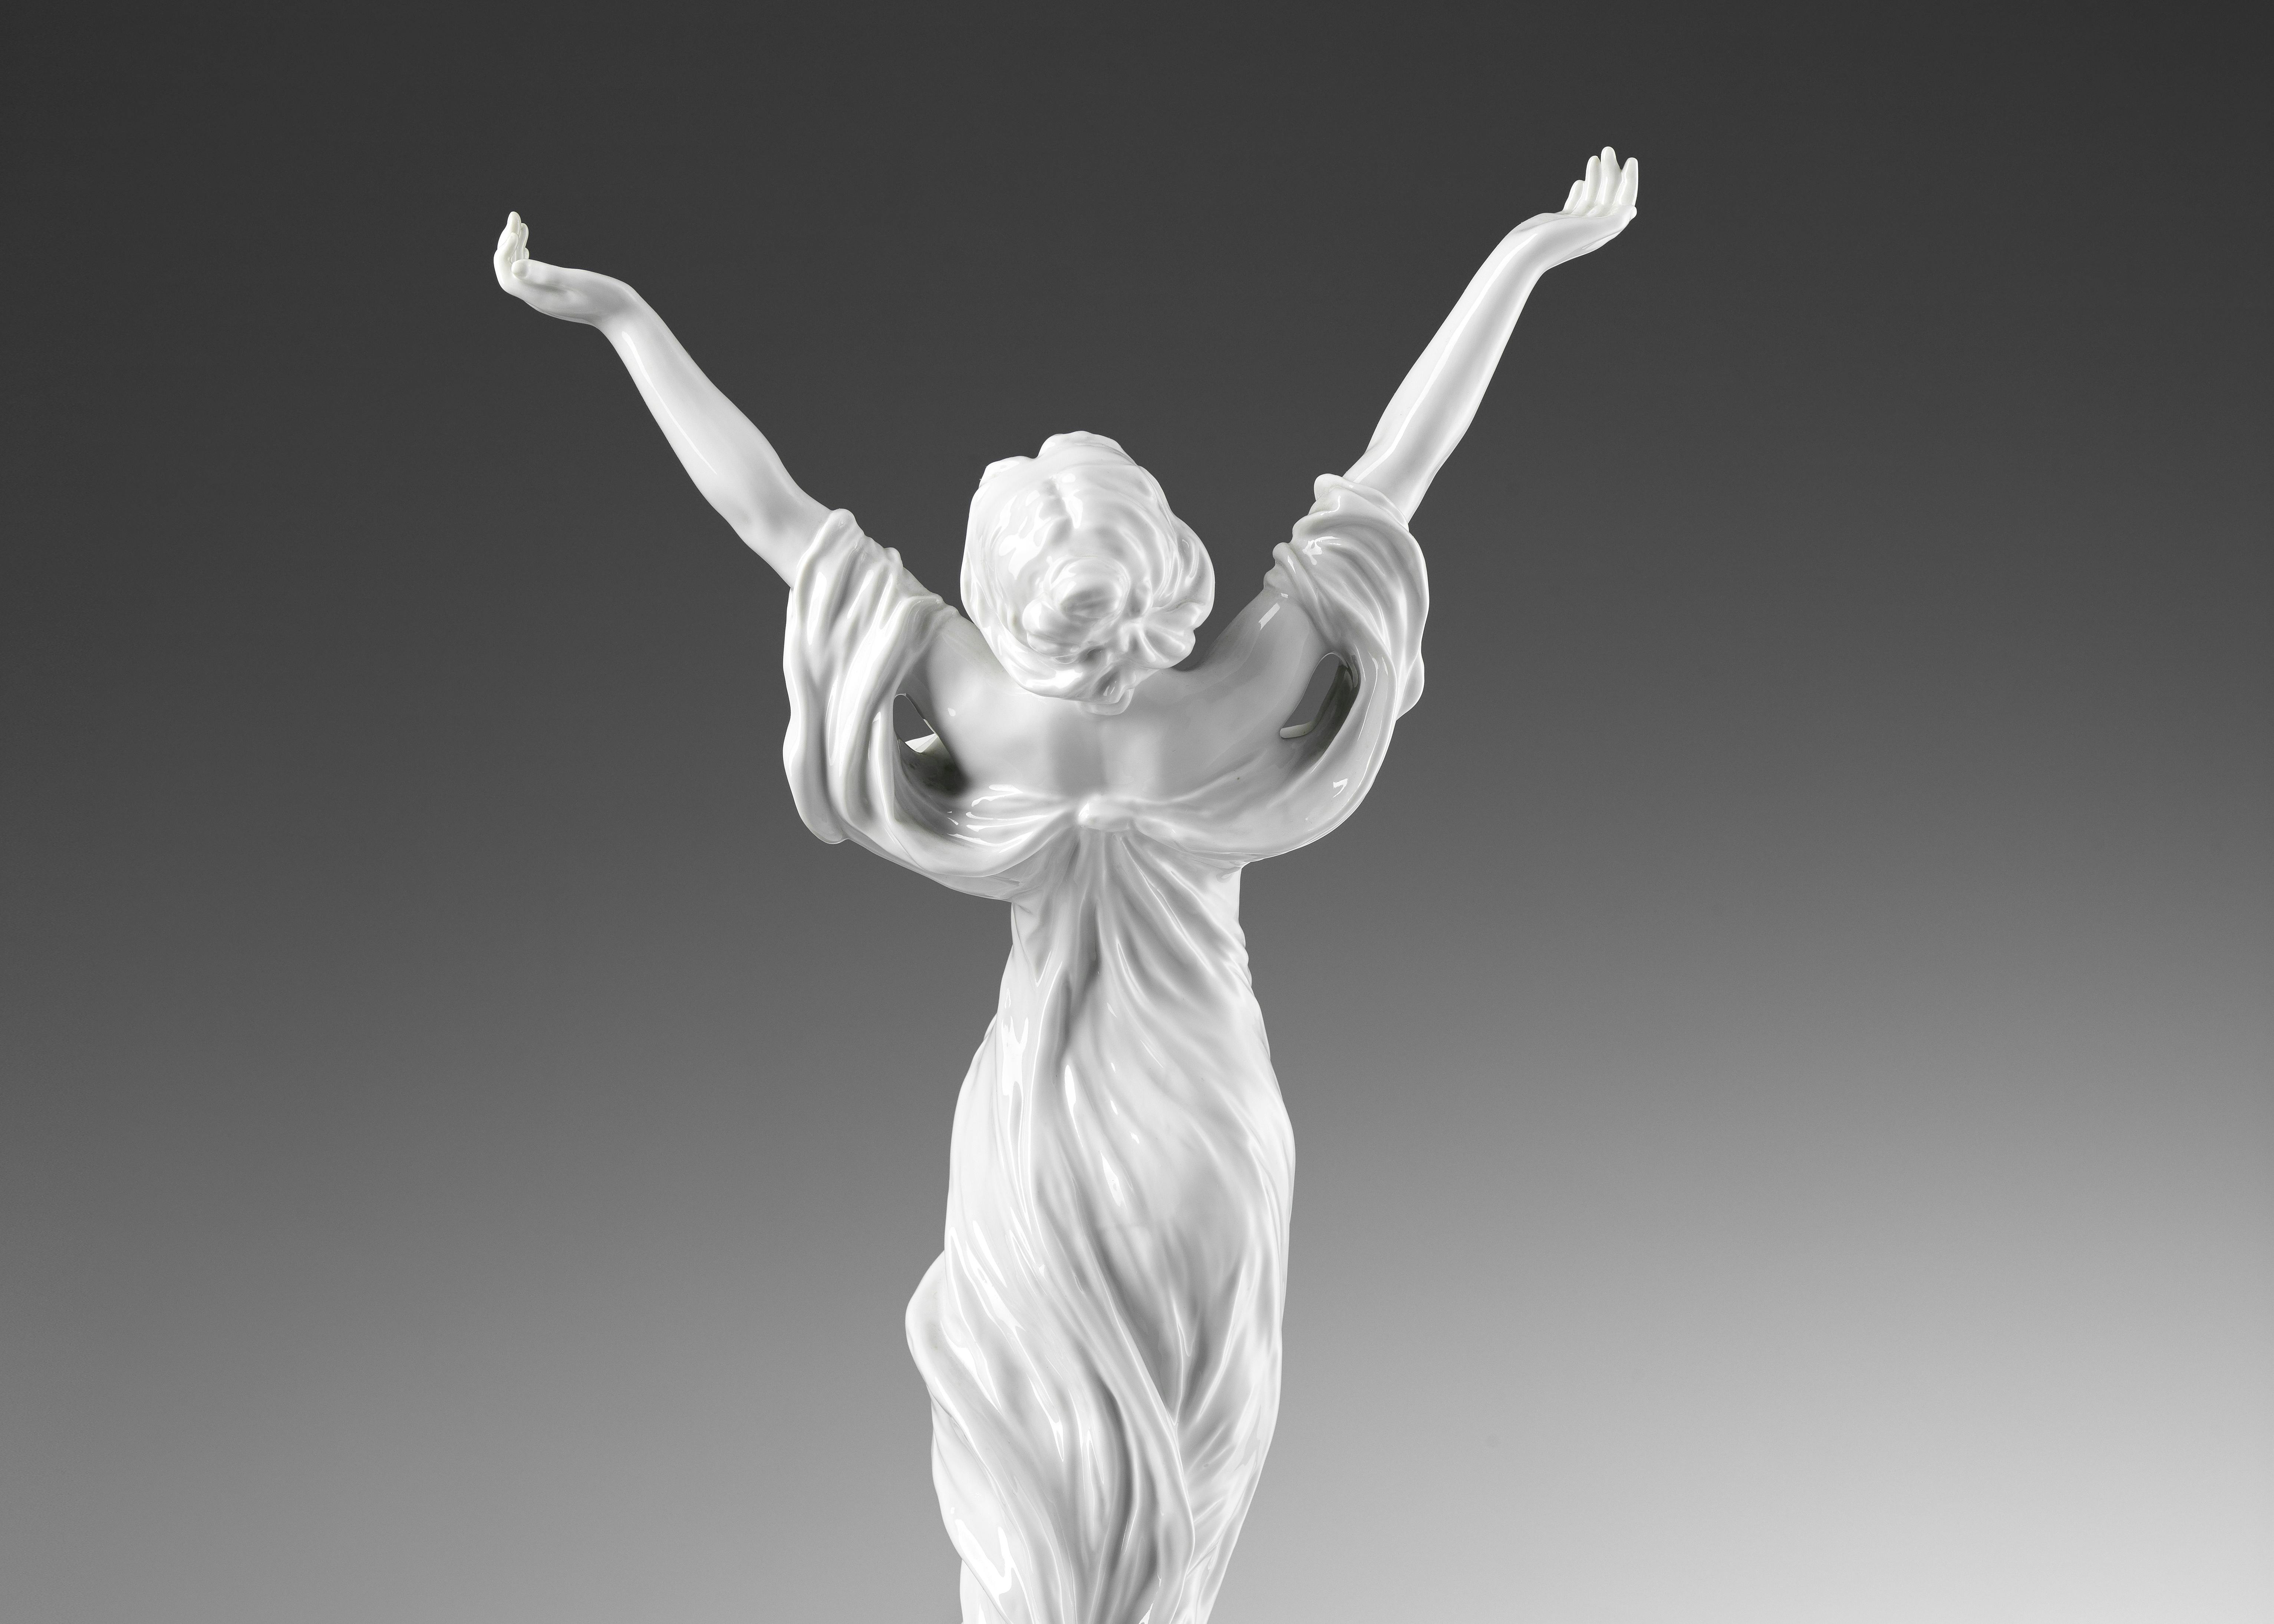 Retro della statua che raffigura una figura femminile a braccia alzate, coperta da un abito leggero mosso dal vento